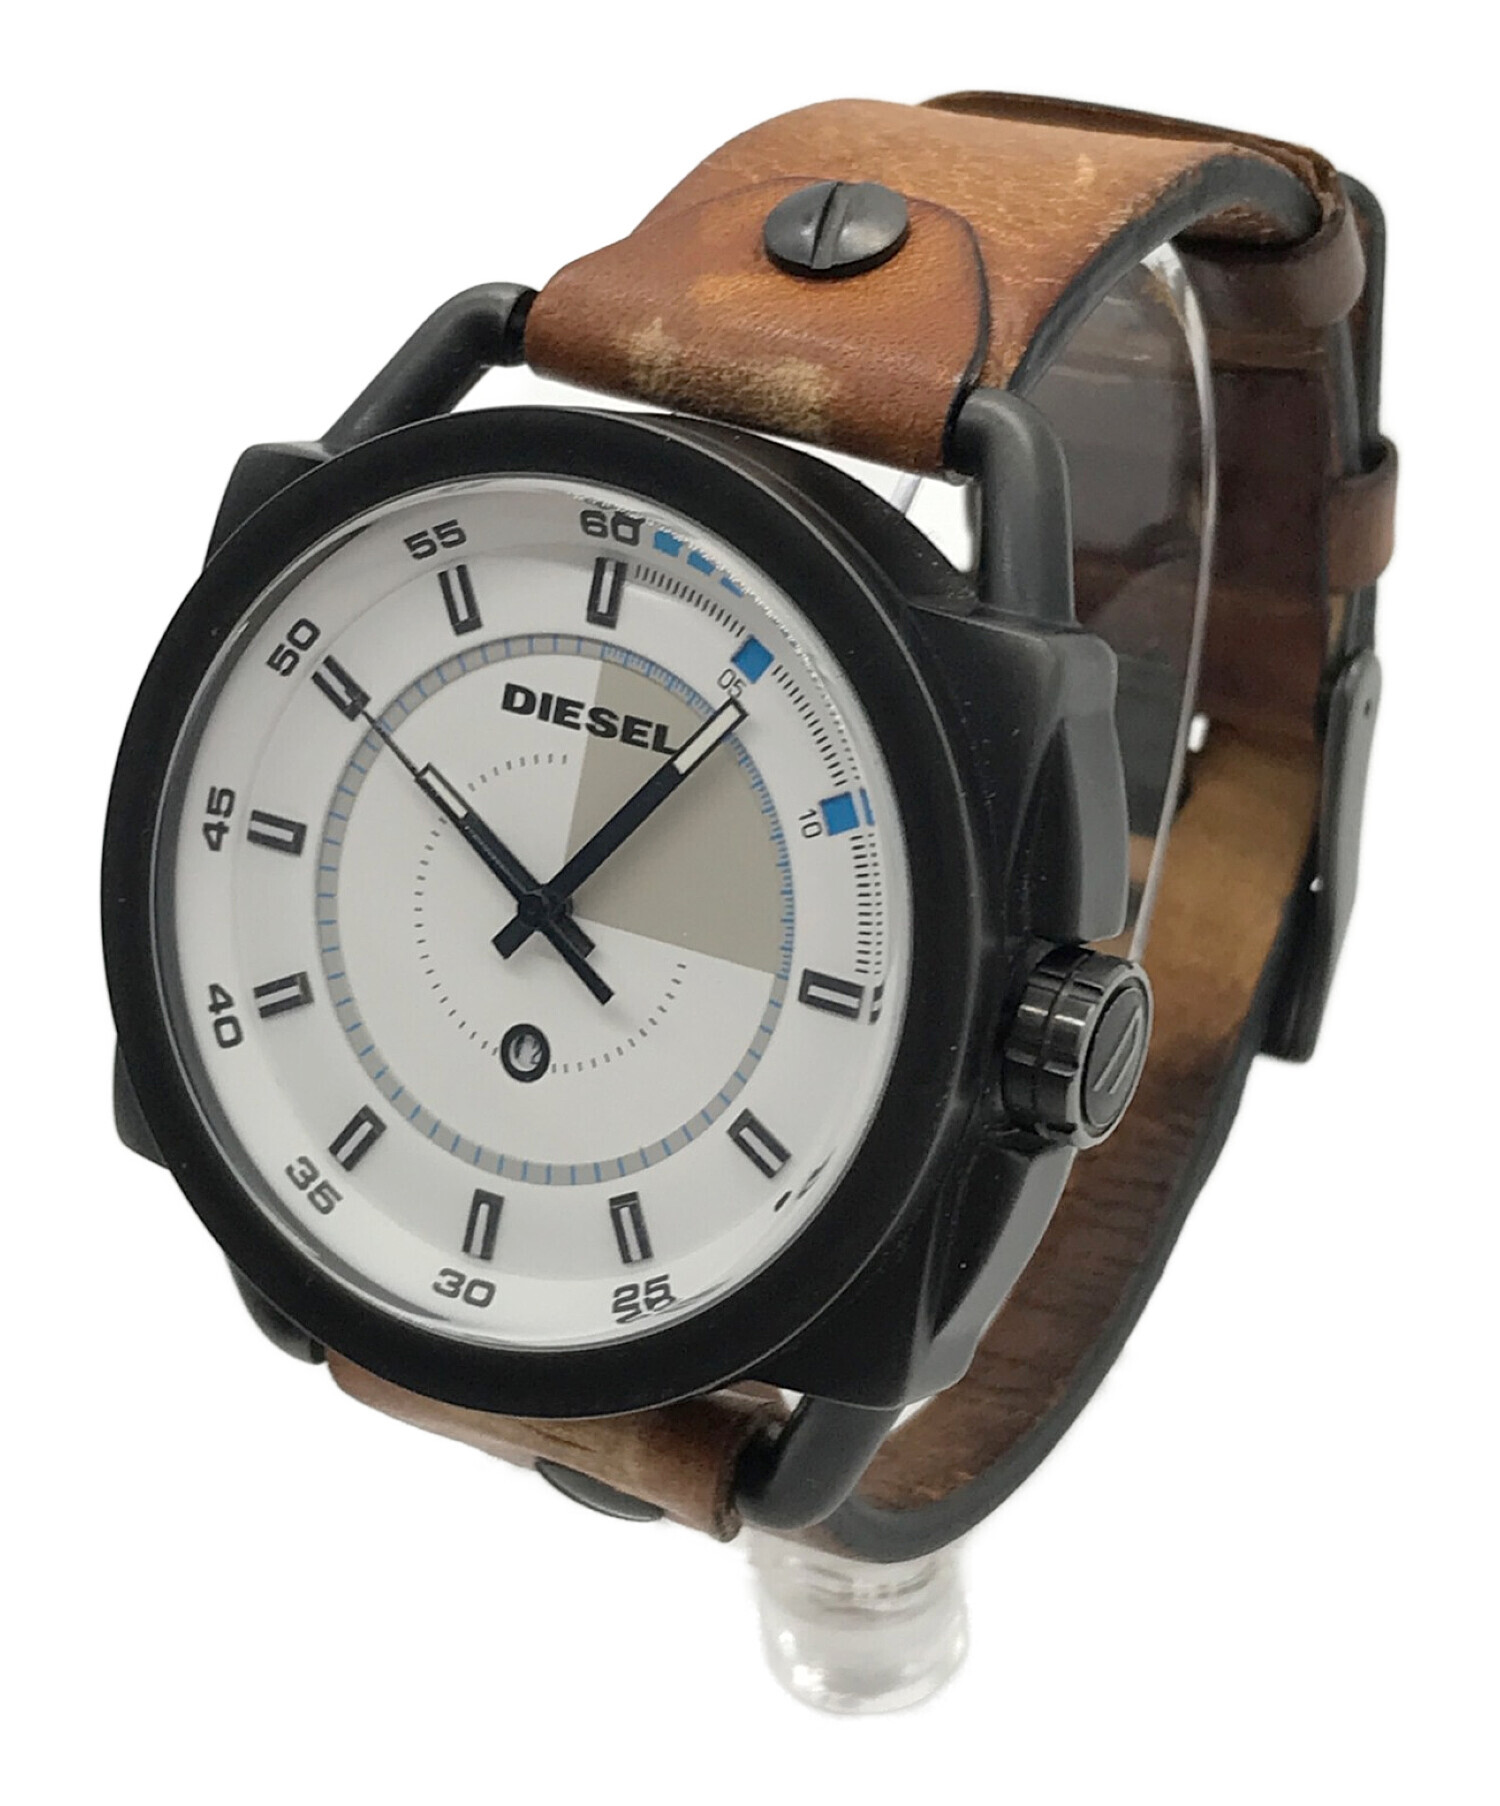 DIESEL (ディーゼル) 腕時計 サイズ:実寸サイズにてご確認ください。